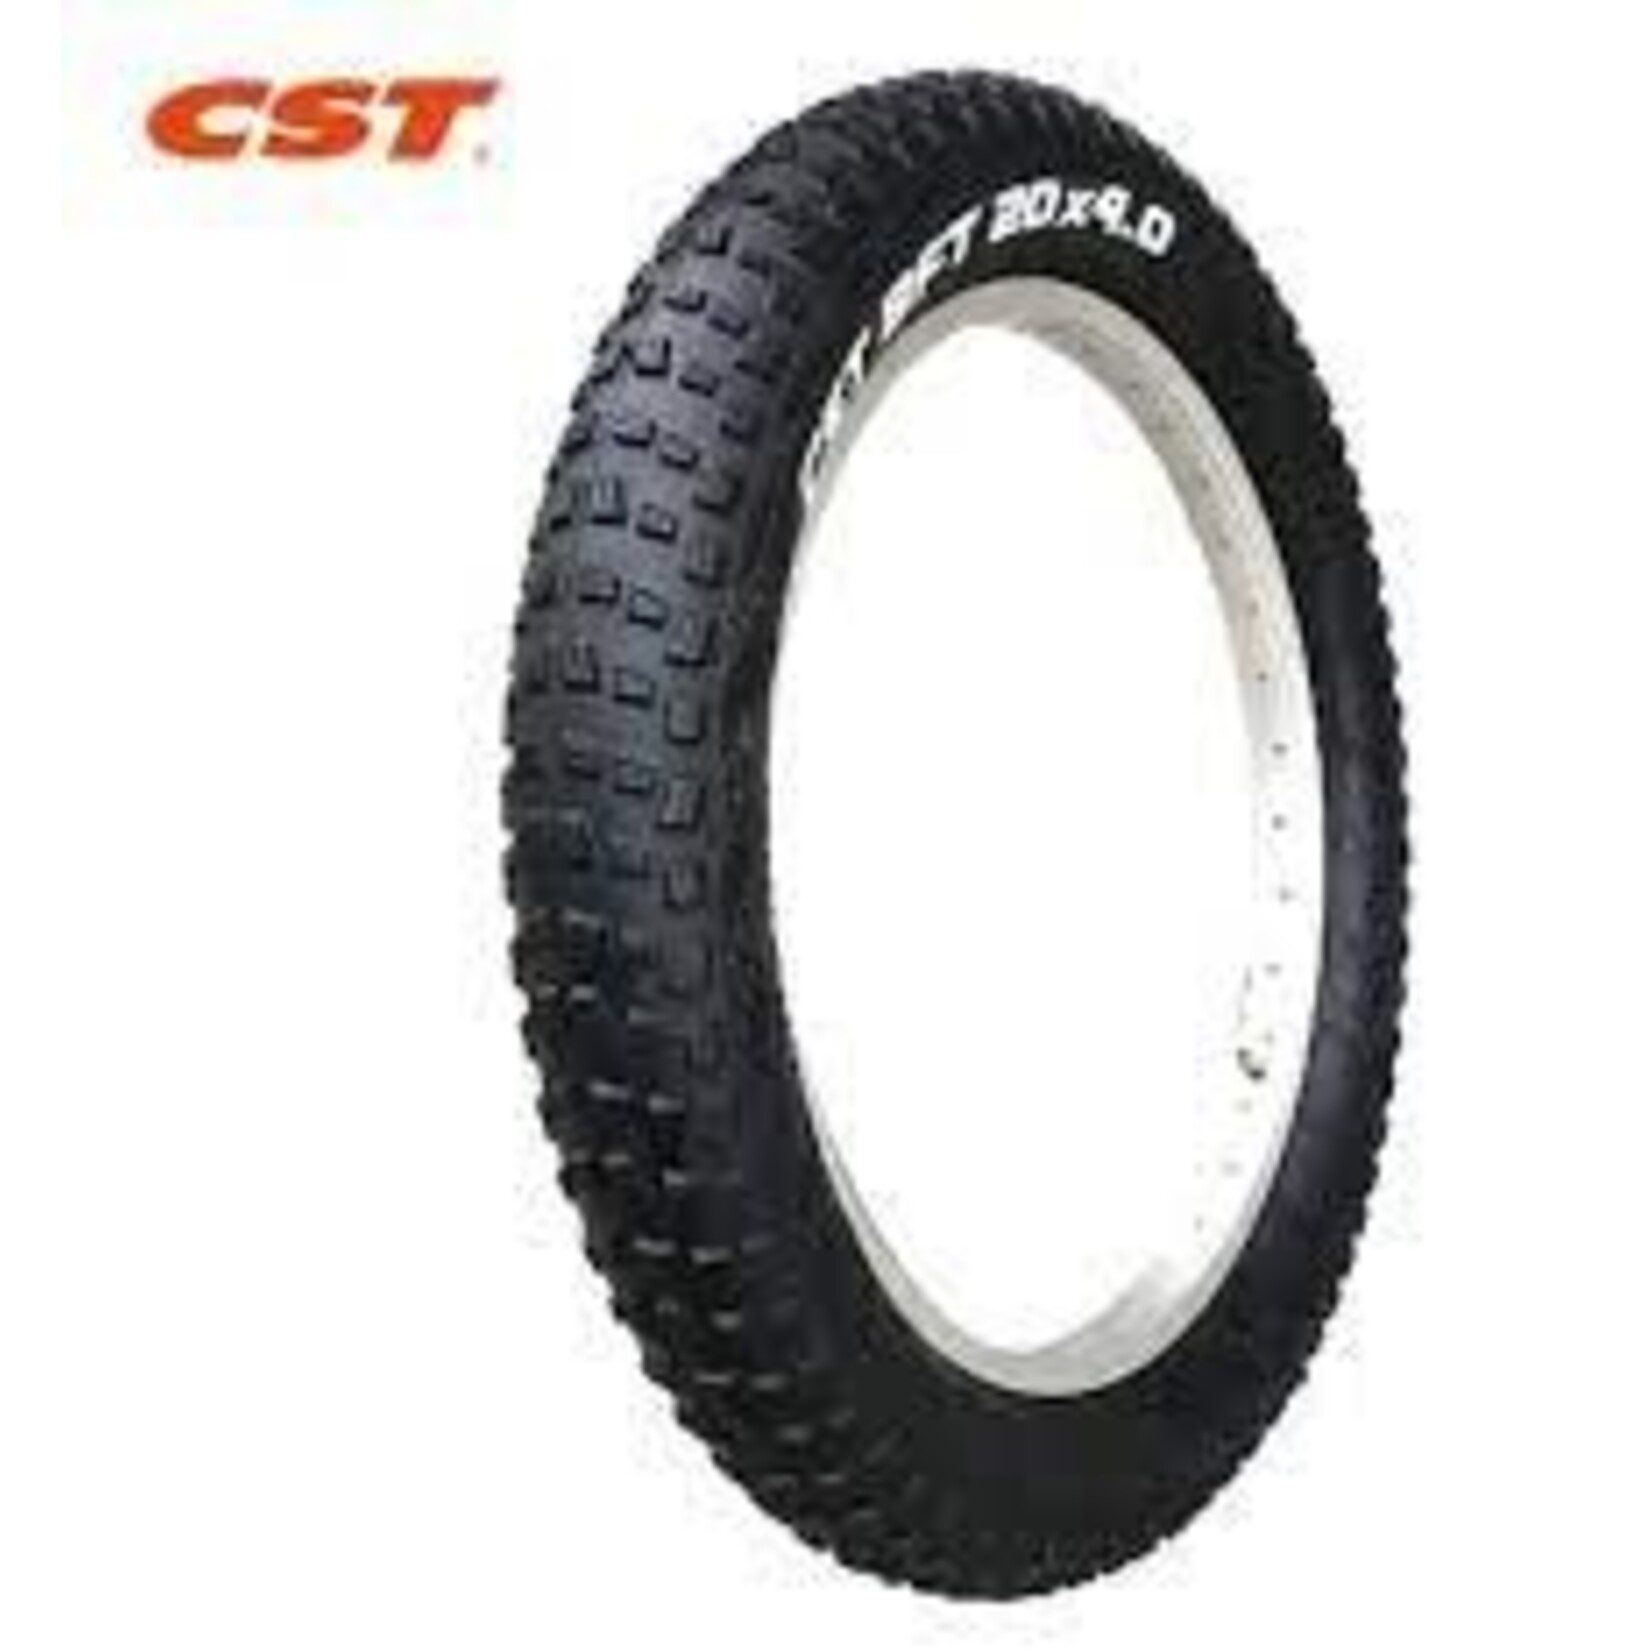 CST CST 20 x 4.0 Fat Tyre